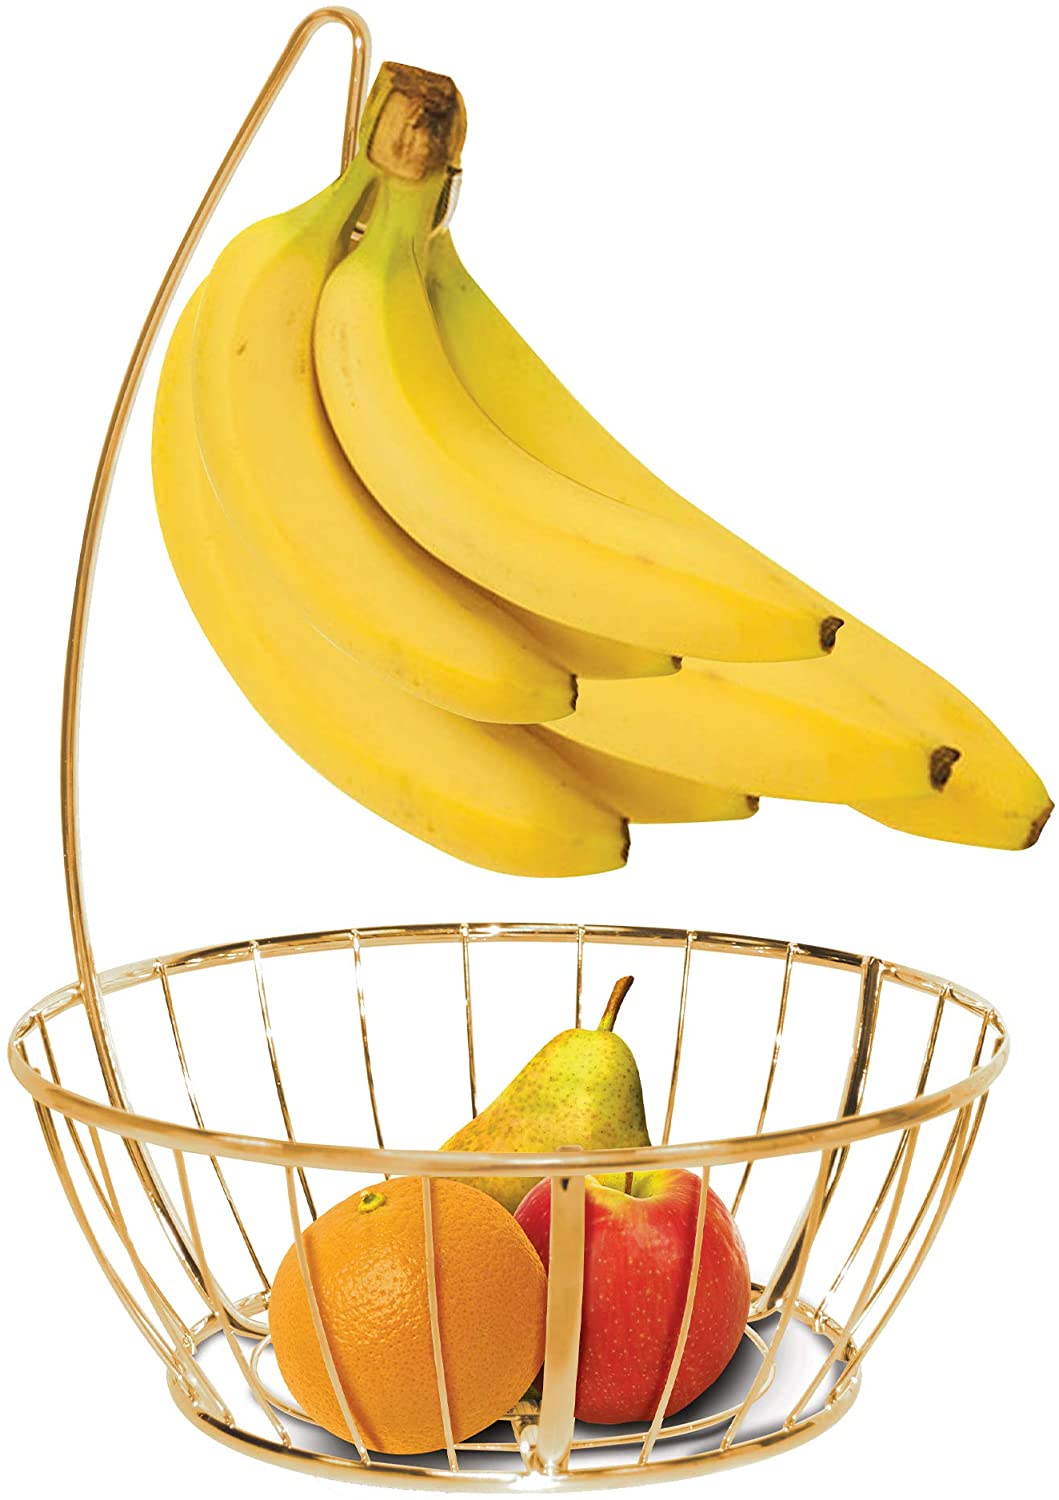 Banana and Fruit Basket Bowl Hanger Holder Stand